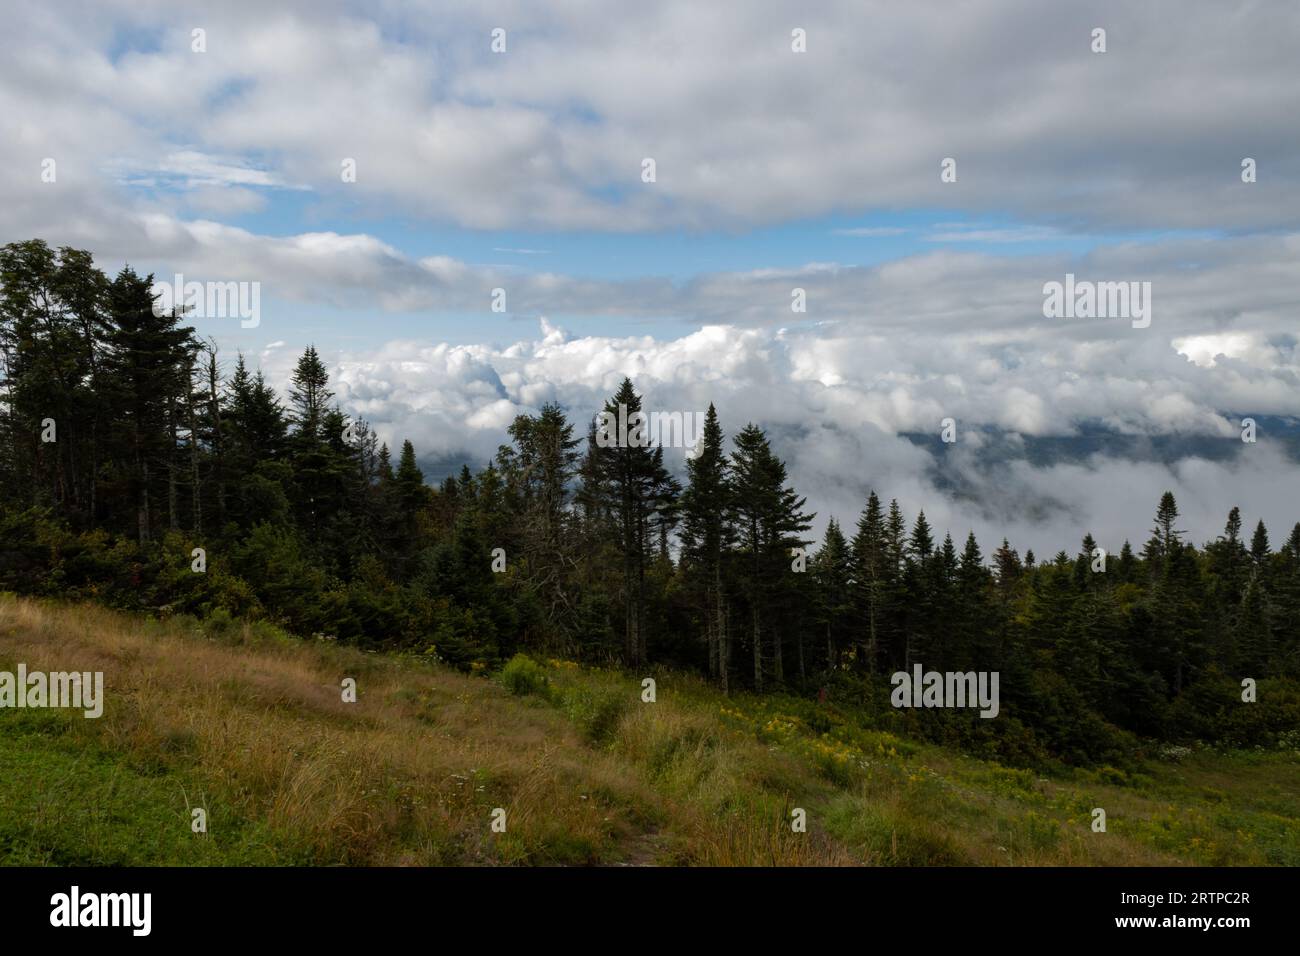 Prato, pino e nuvole sulla cima della montagna denotano una perfetta serenità con un accenno di inquietante Foto Stock